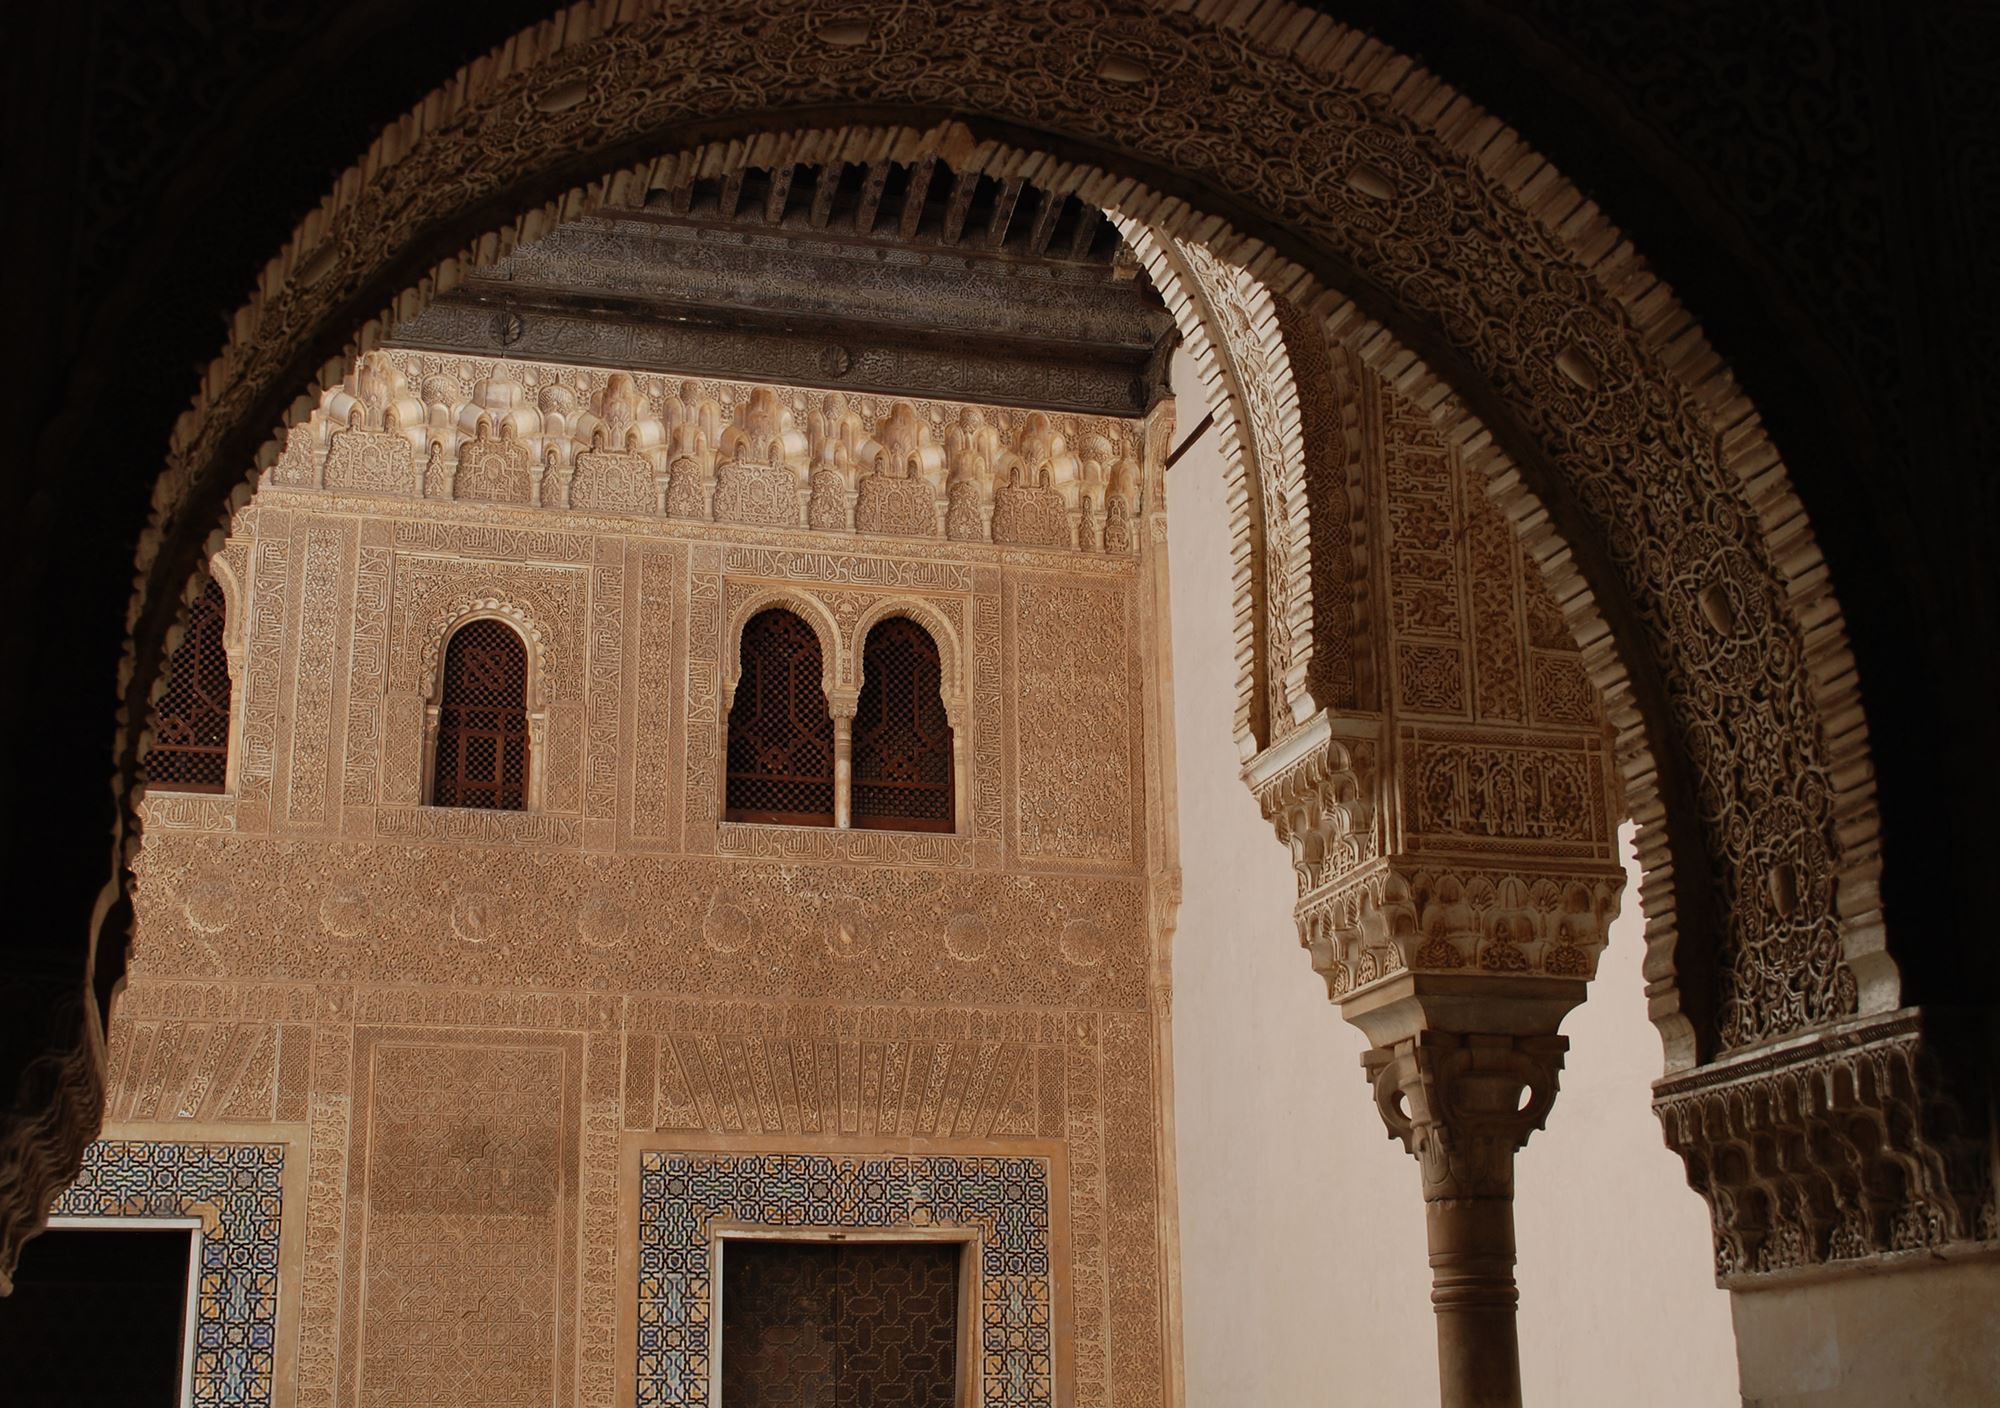 prenotare prenota prenotazione visite guidate guida visita guidata tour privata all'Alhambra e al Generalife